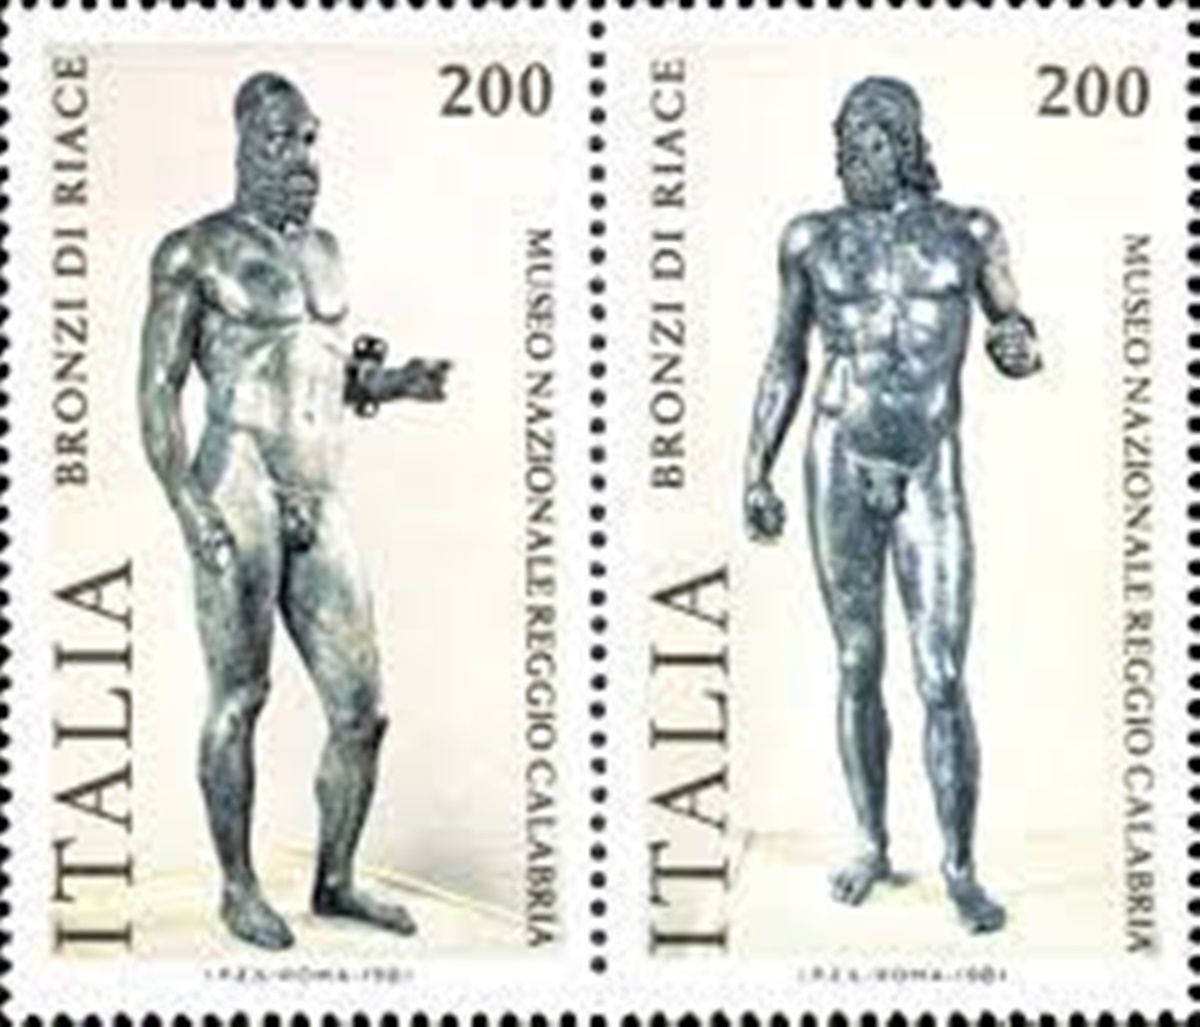 50° anniversario dei Bronzi, a dicembre sarà emesso il francobollo commemorativo